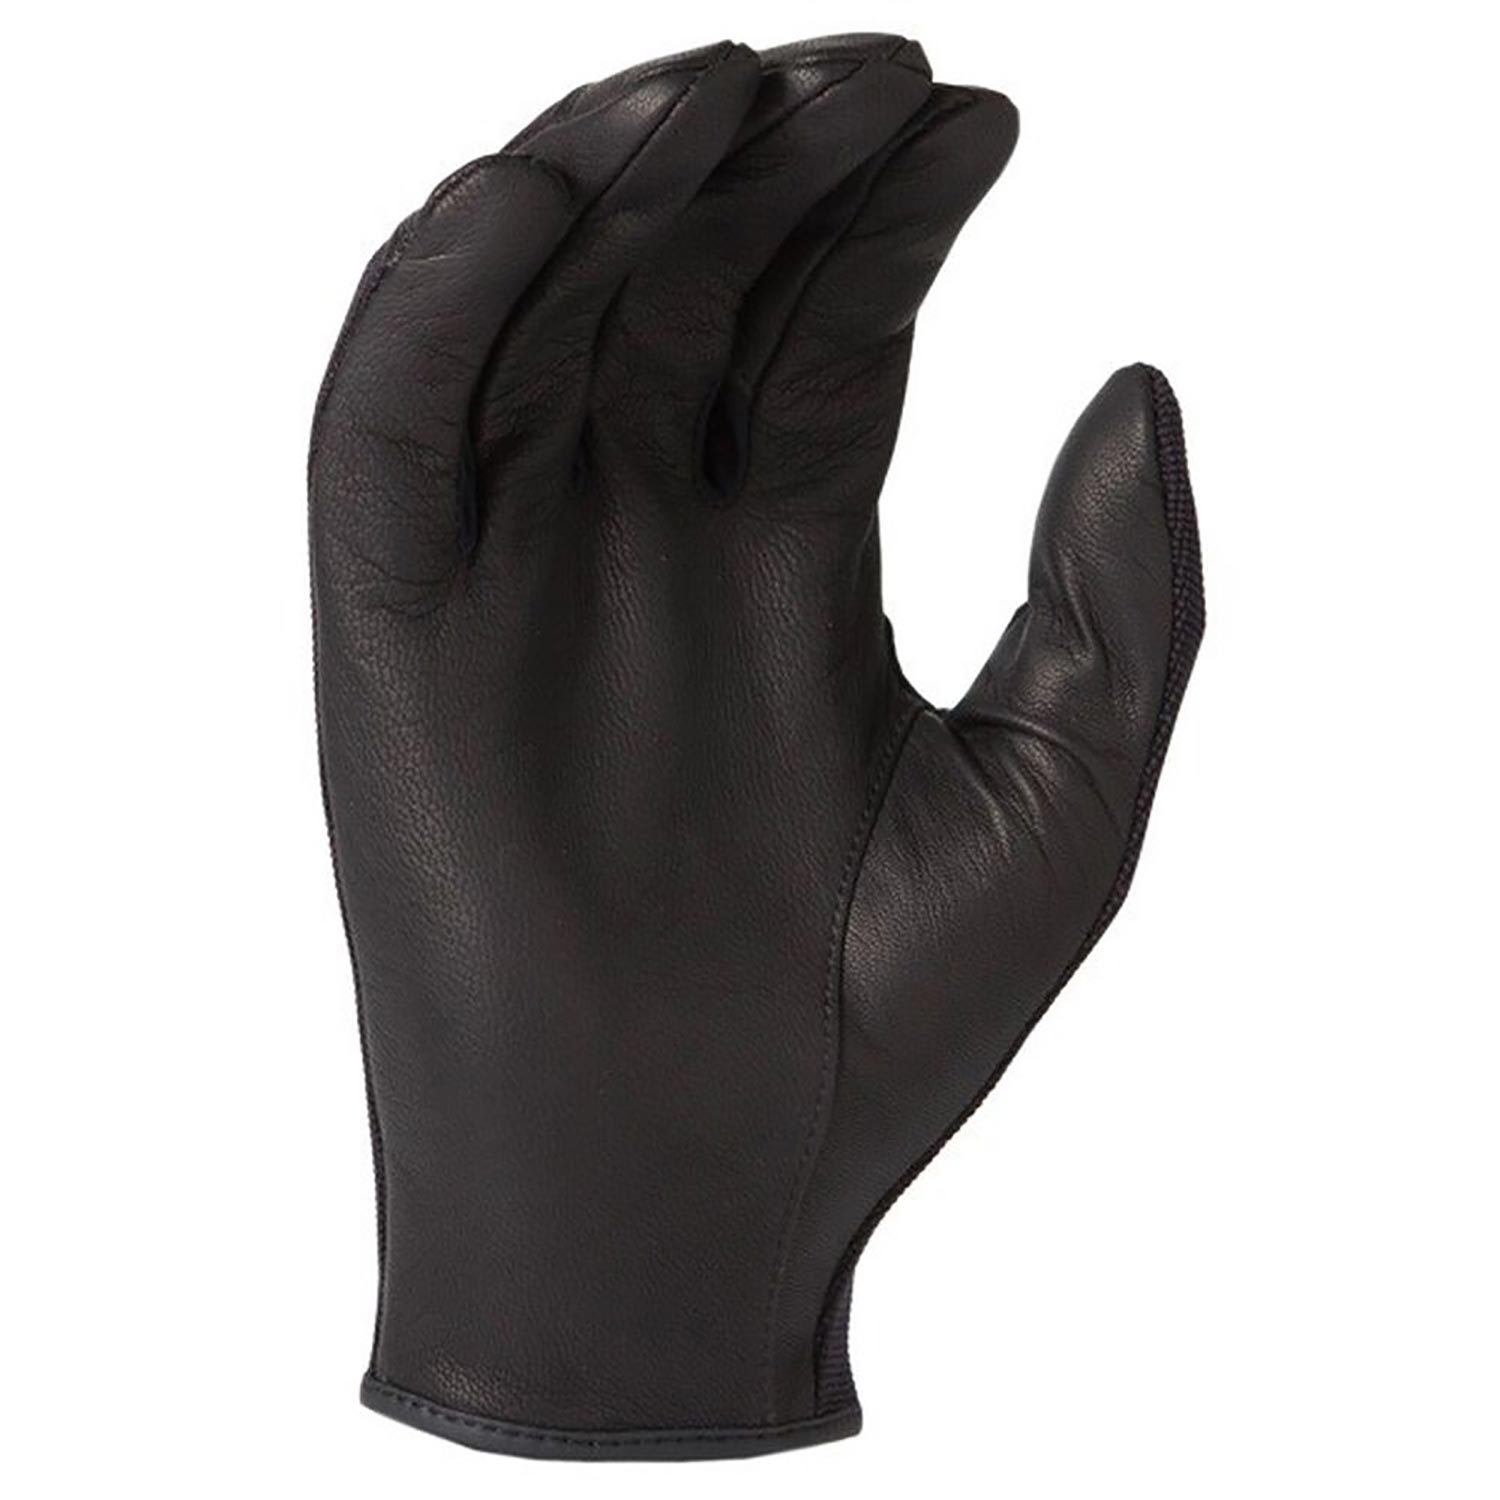 HWI Gear Neoprene Duty Gloves